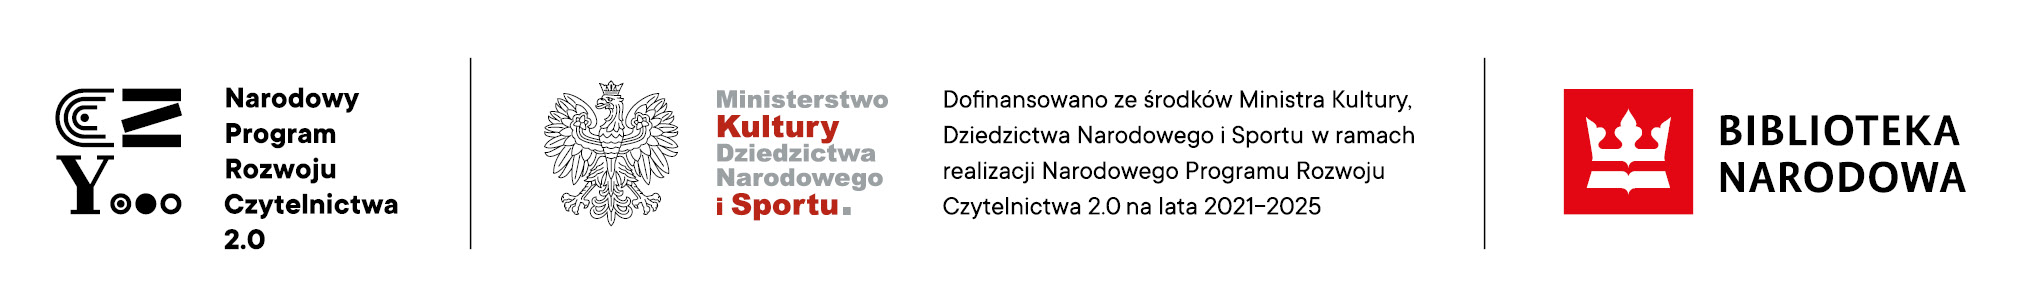 Narodowy Program Rozwoju Czytelnictwa 2.0, logo Ministerstwo Kultury i Dziedzictwa Narodowego i Sportu, logo Biblioteki Narodowej